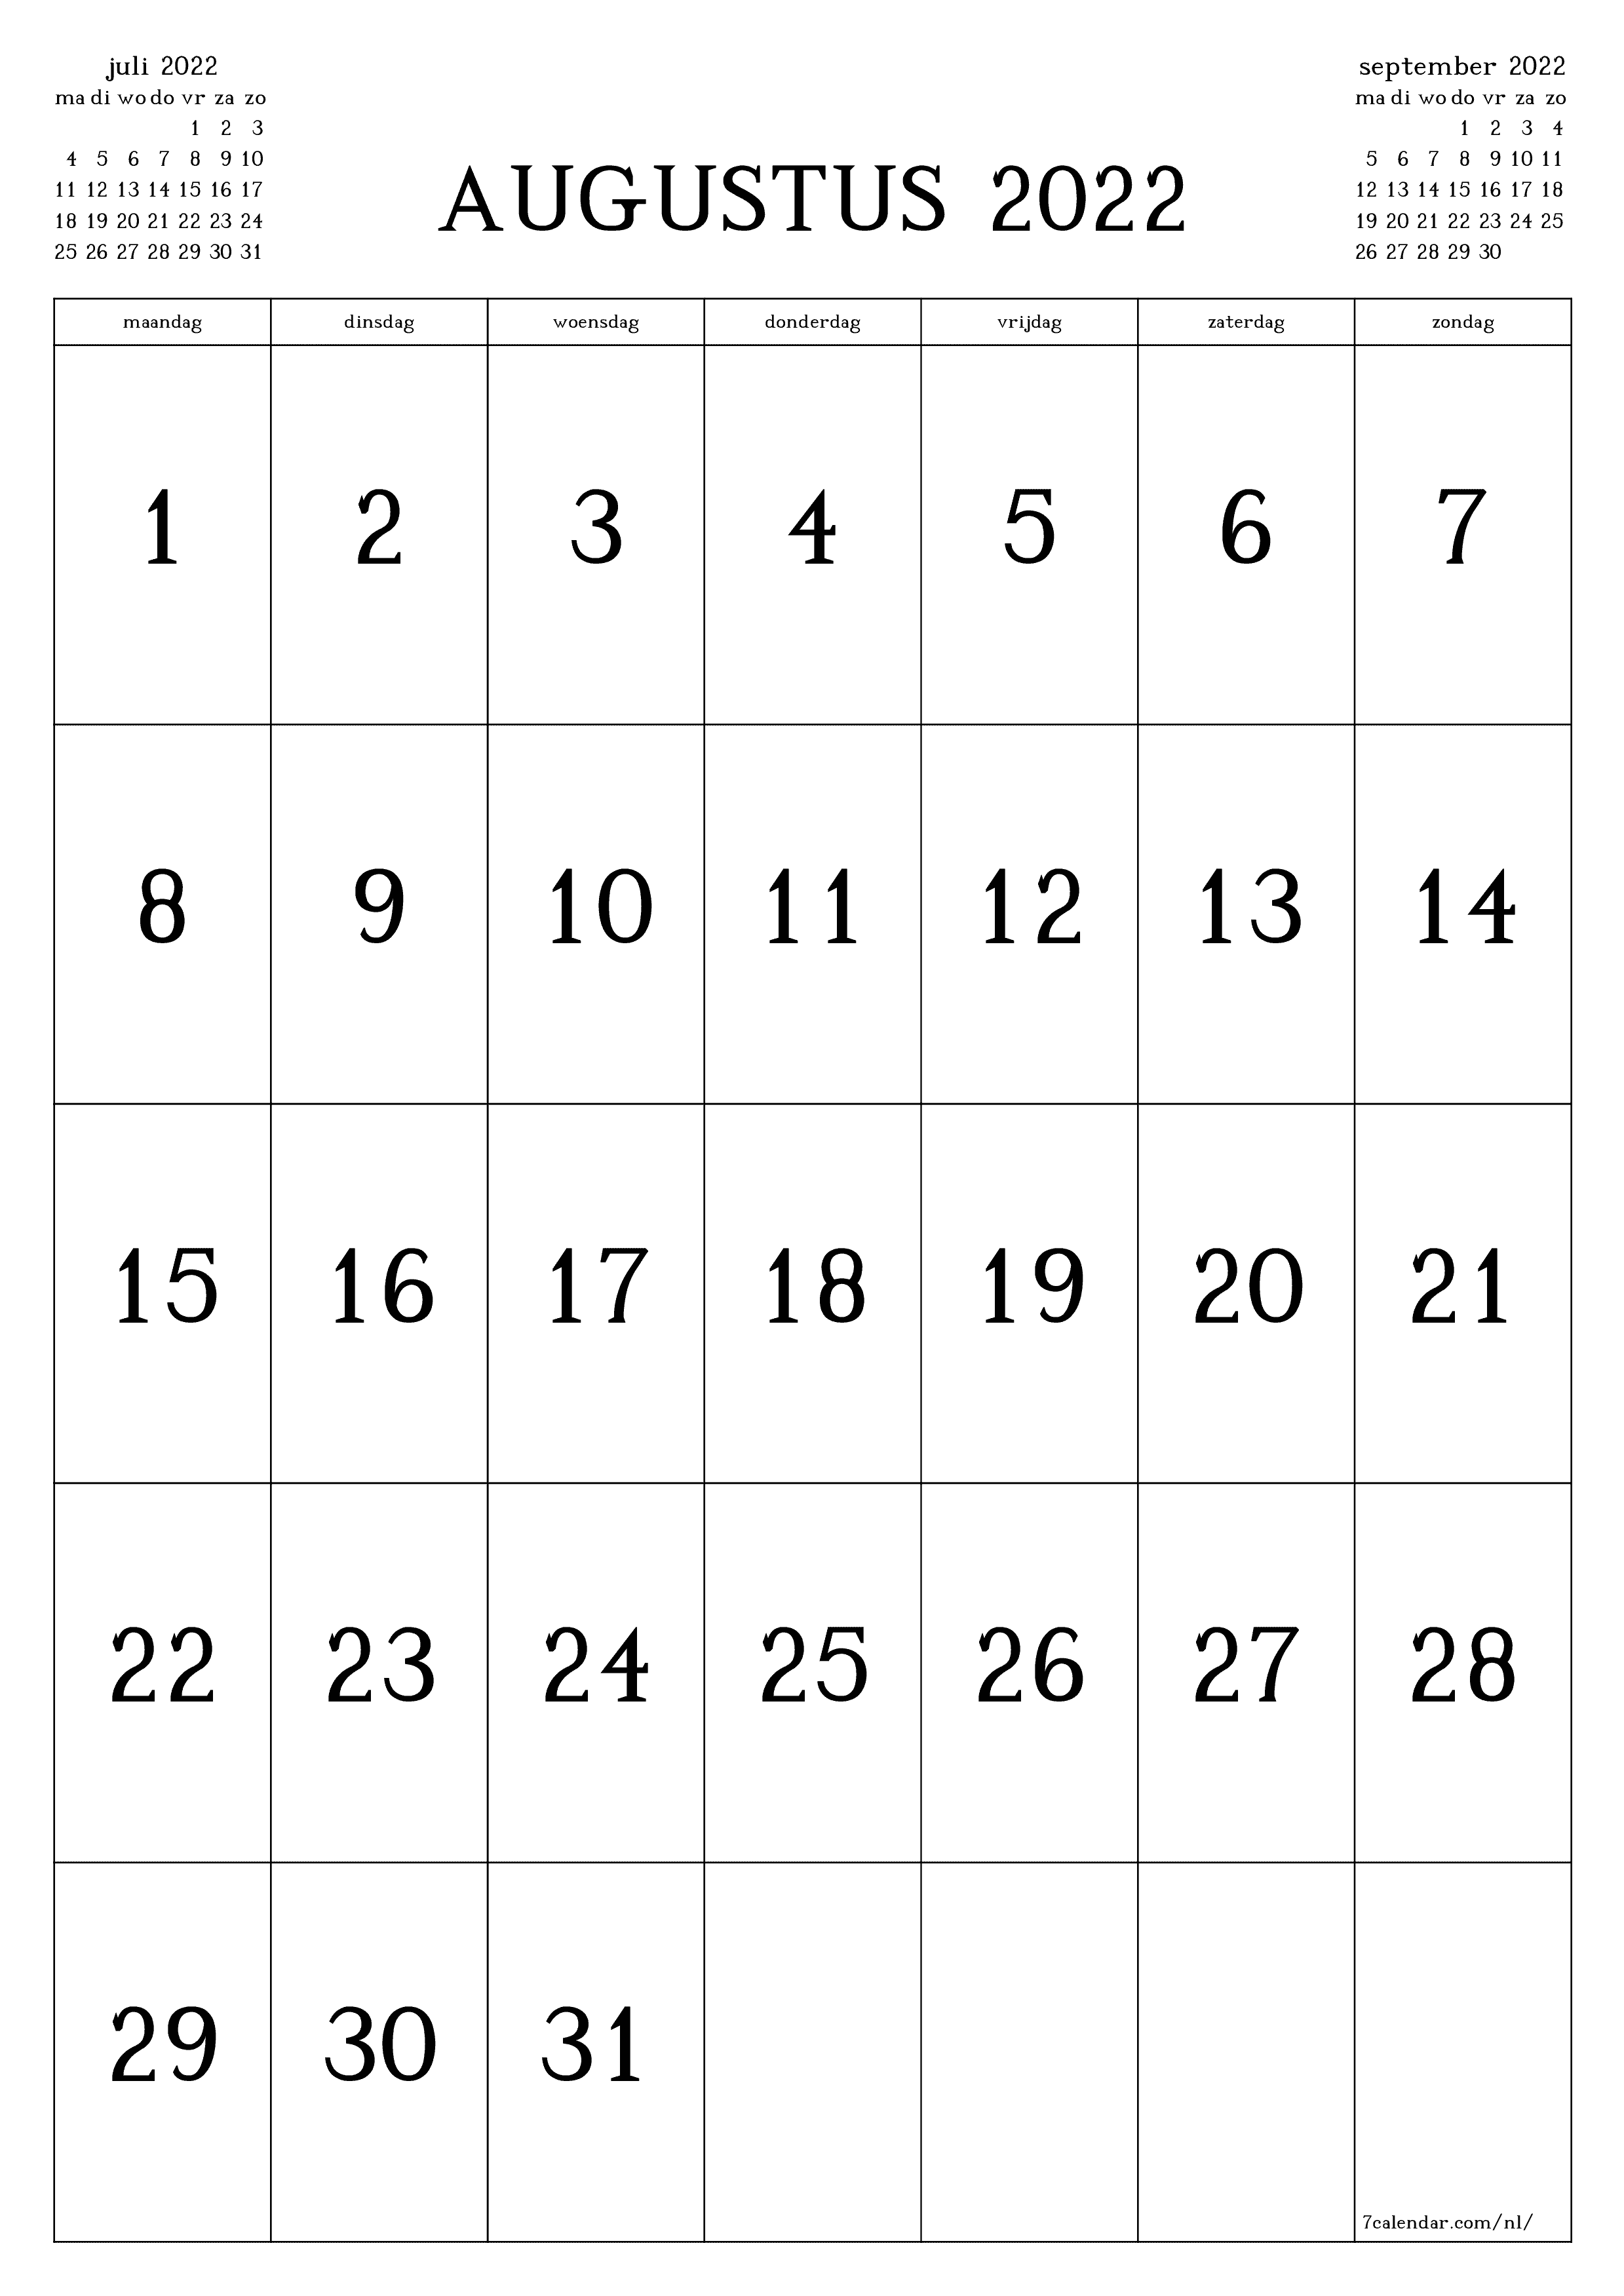 Lege maandkalender voor maand augustus 2022 opslaan en afdrukken naar pdf PNG Dutch - 7calendar.com